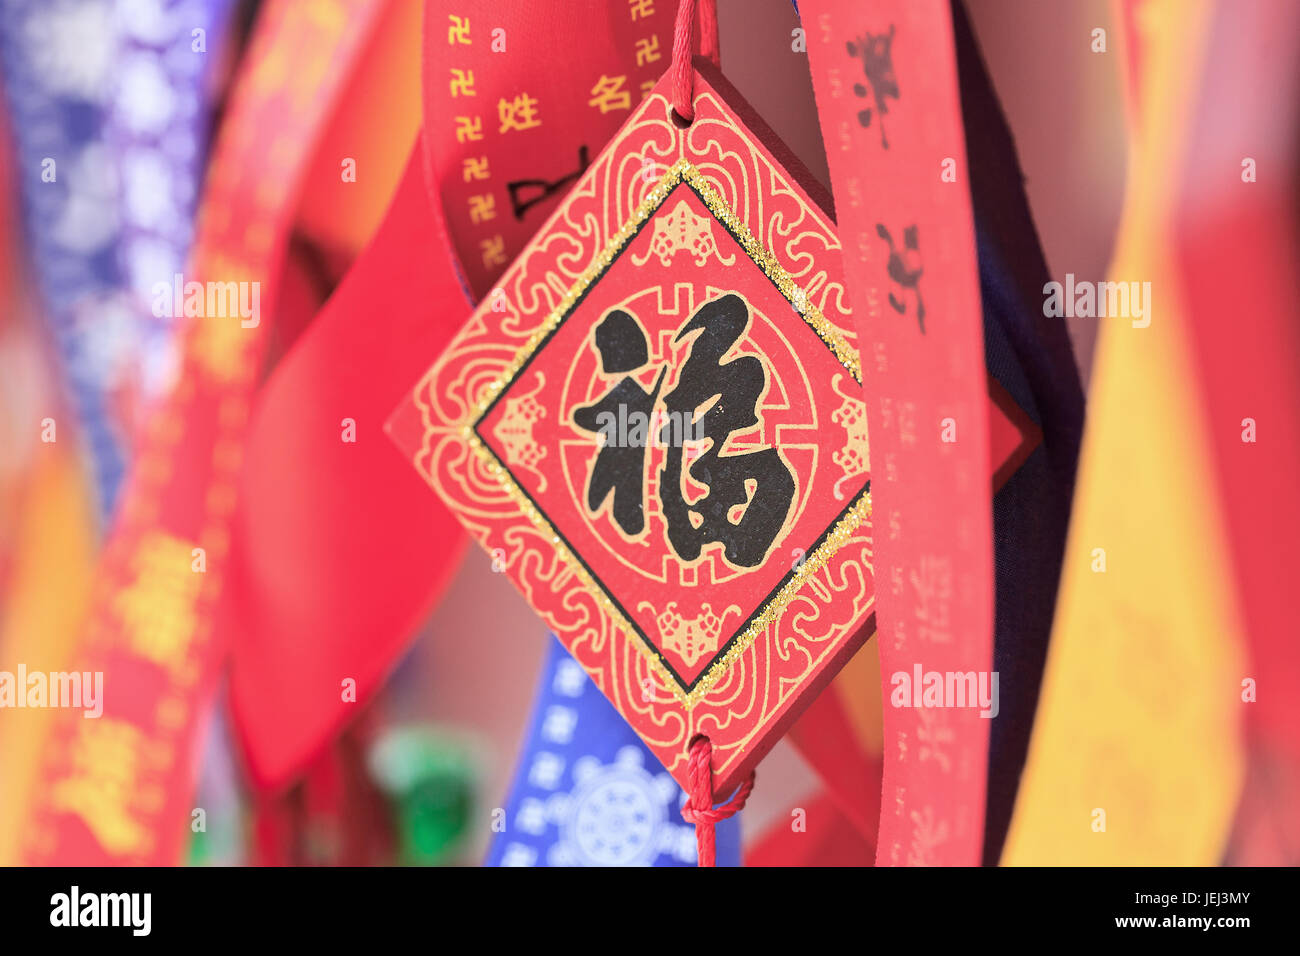 PEKING, 10. AUGUST 2015. Kunstvolle Wunschkarten hängen an einem Regal in einem buddhistischen Tempel. Nach einer alten buddhistischen Tradition kaufen Gläubige Wunschkarten. Stockfoto